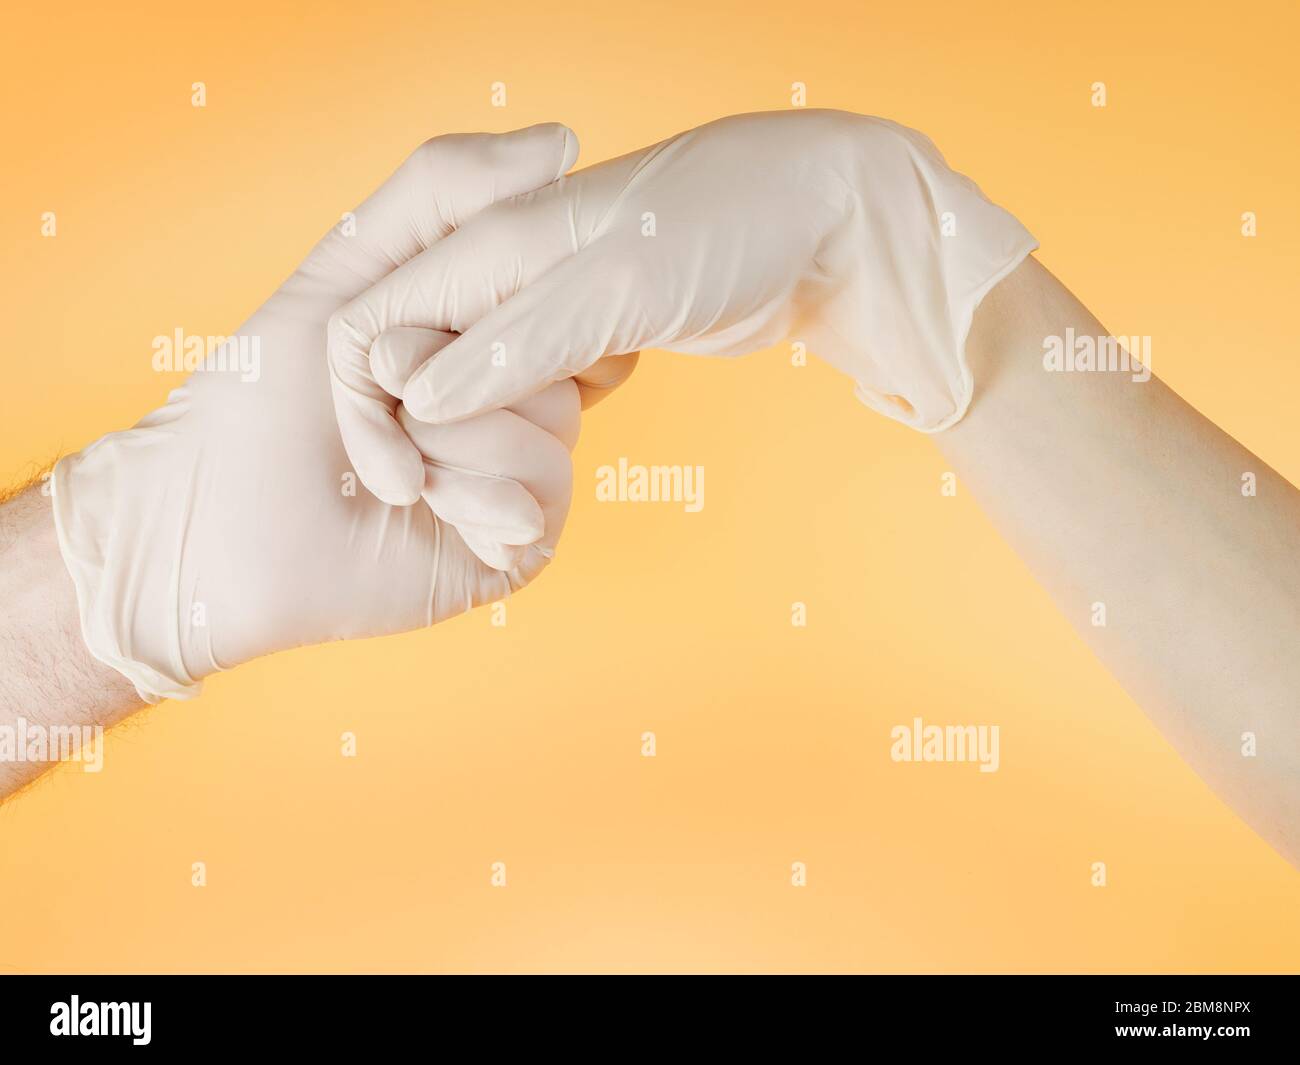 Homme et femme mains dans des gants de protection blancs se tenant l'un l'autre. Sur fond jaune clair Banque D'Images